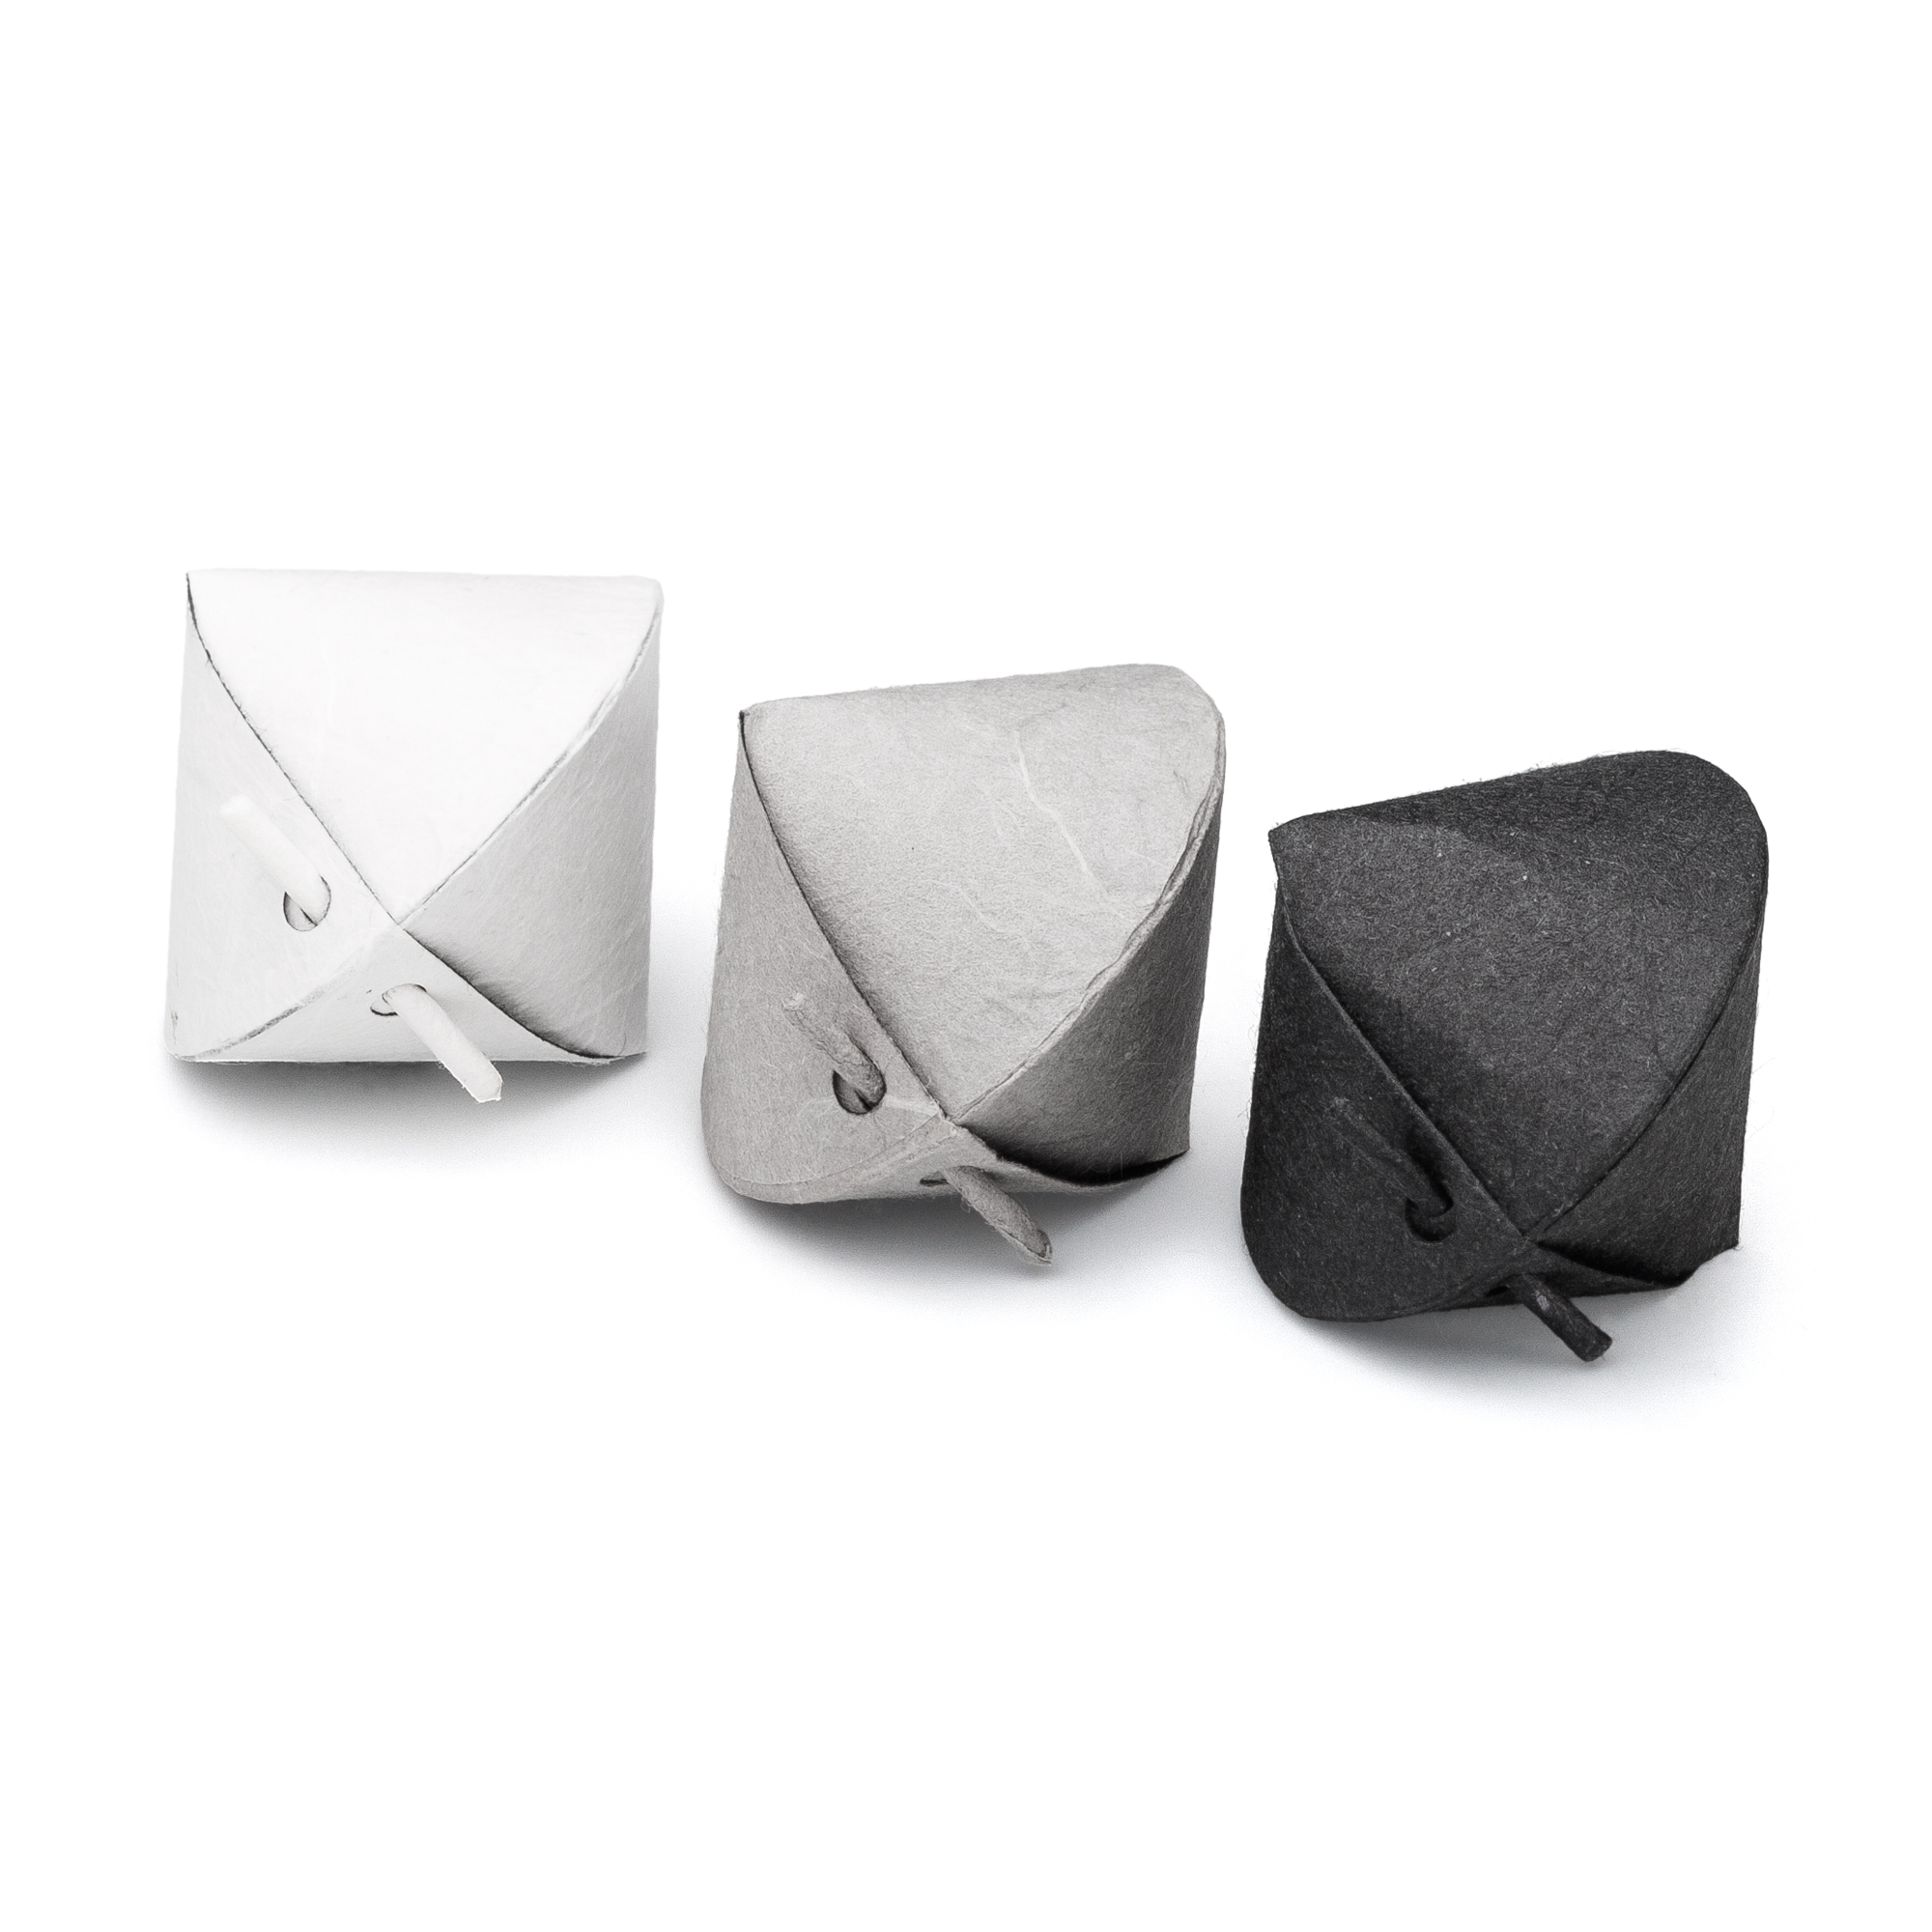 PACBOX klein schwarz/weiß/grau